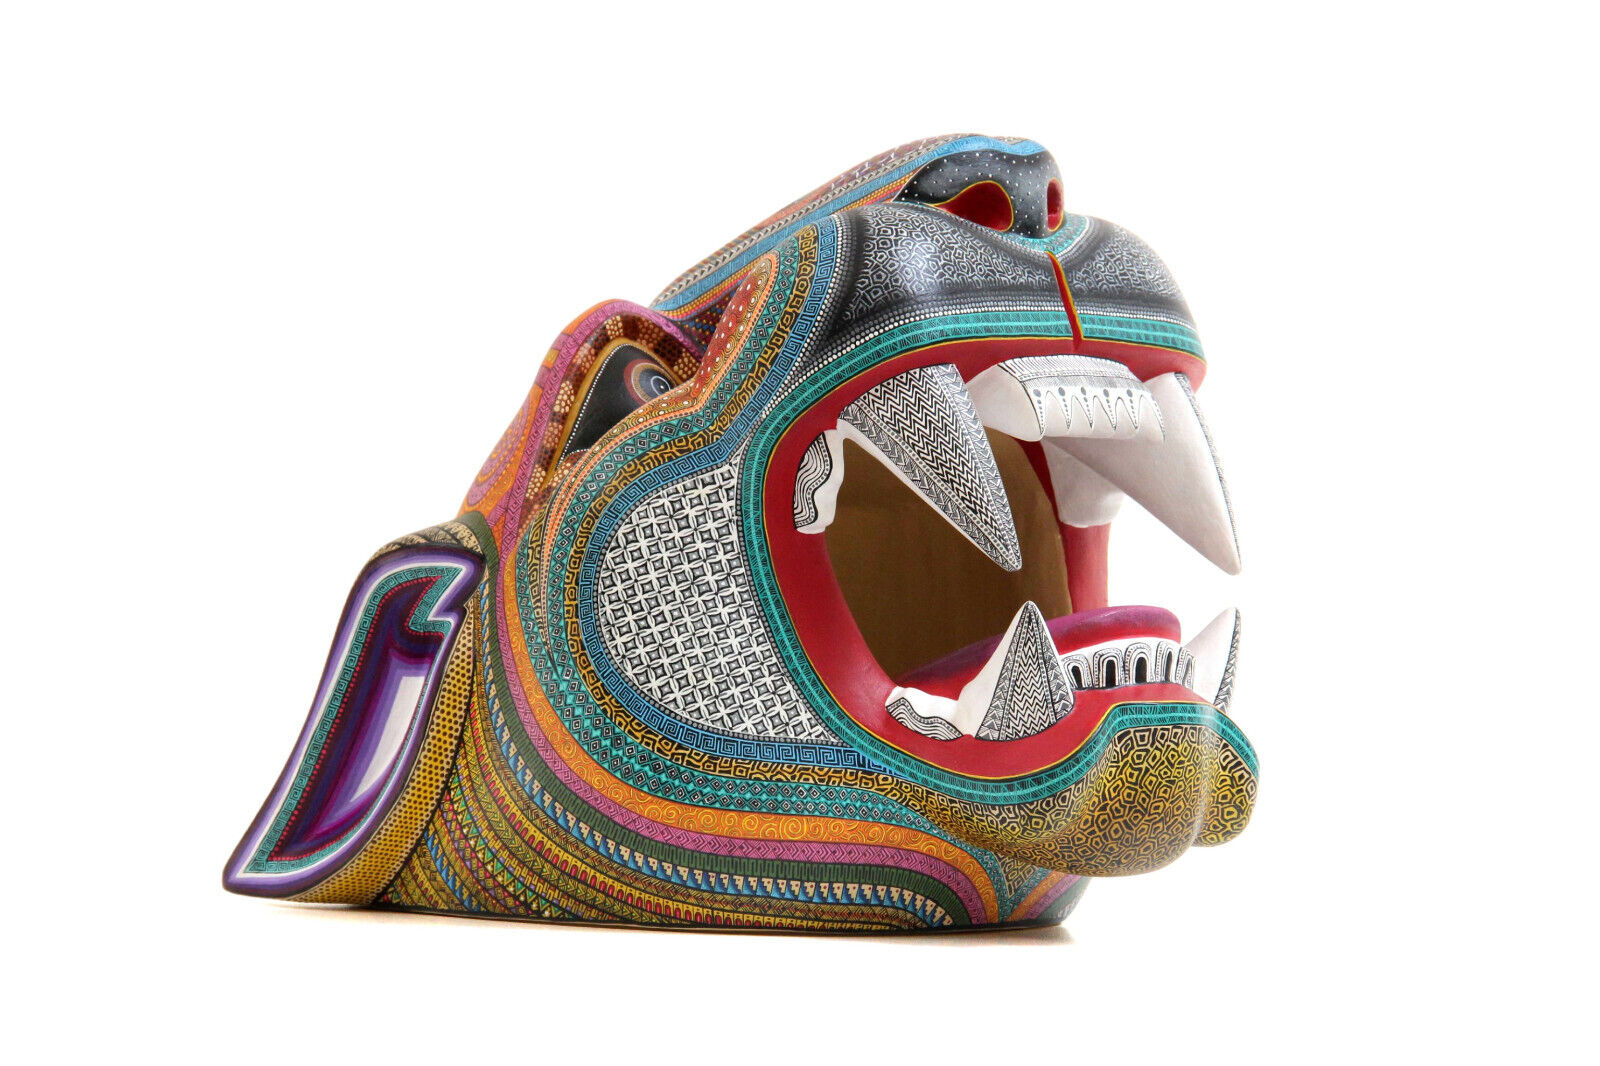 Oaxaca Alebrije Jaguar Head 14.7 in. | Hand painted carving mexican folk art